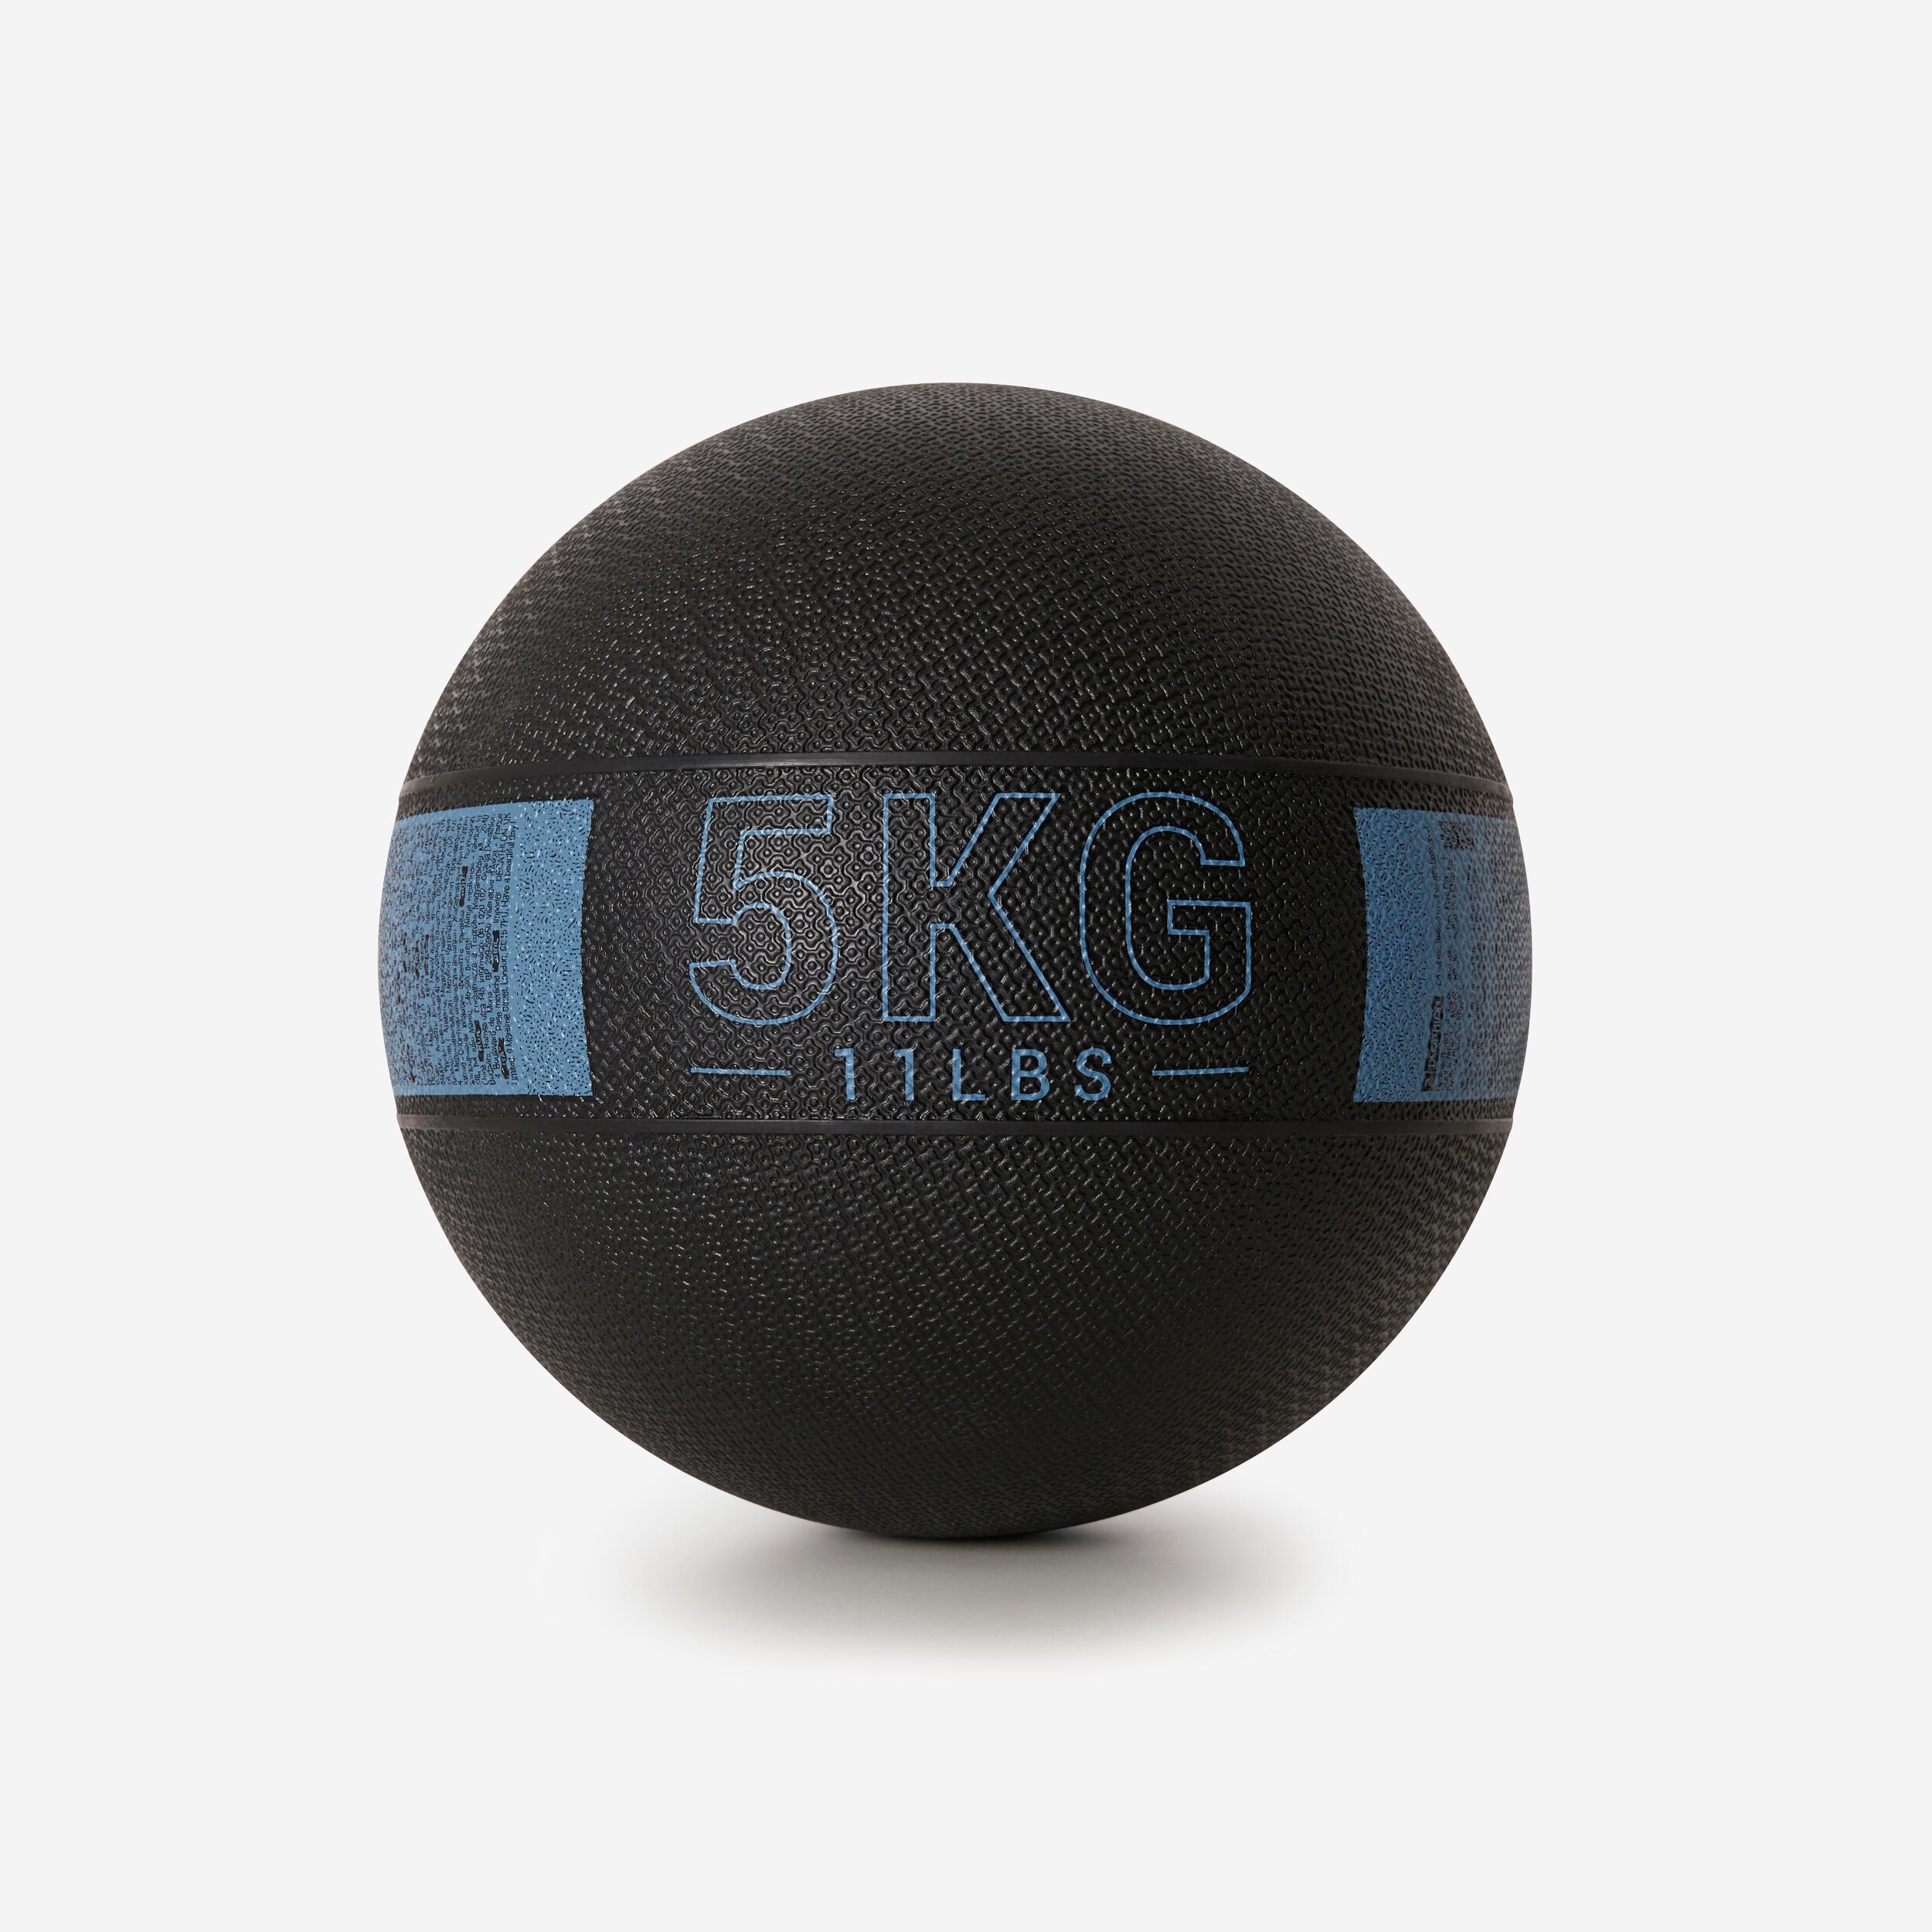 5 kg Rubber Medicine Ball - Black/Blue 1/4